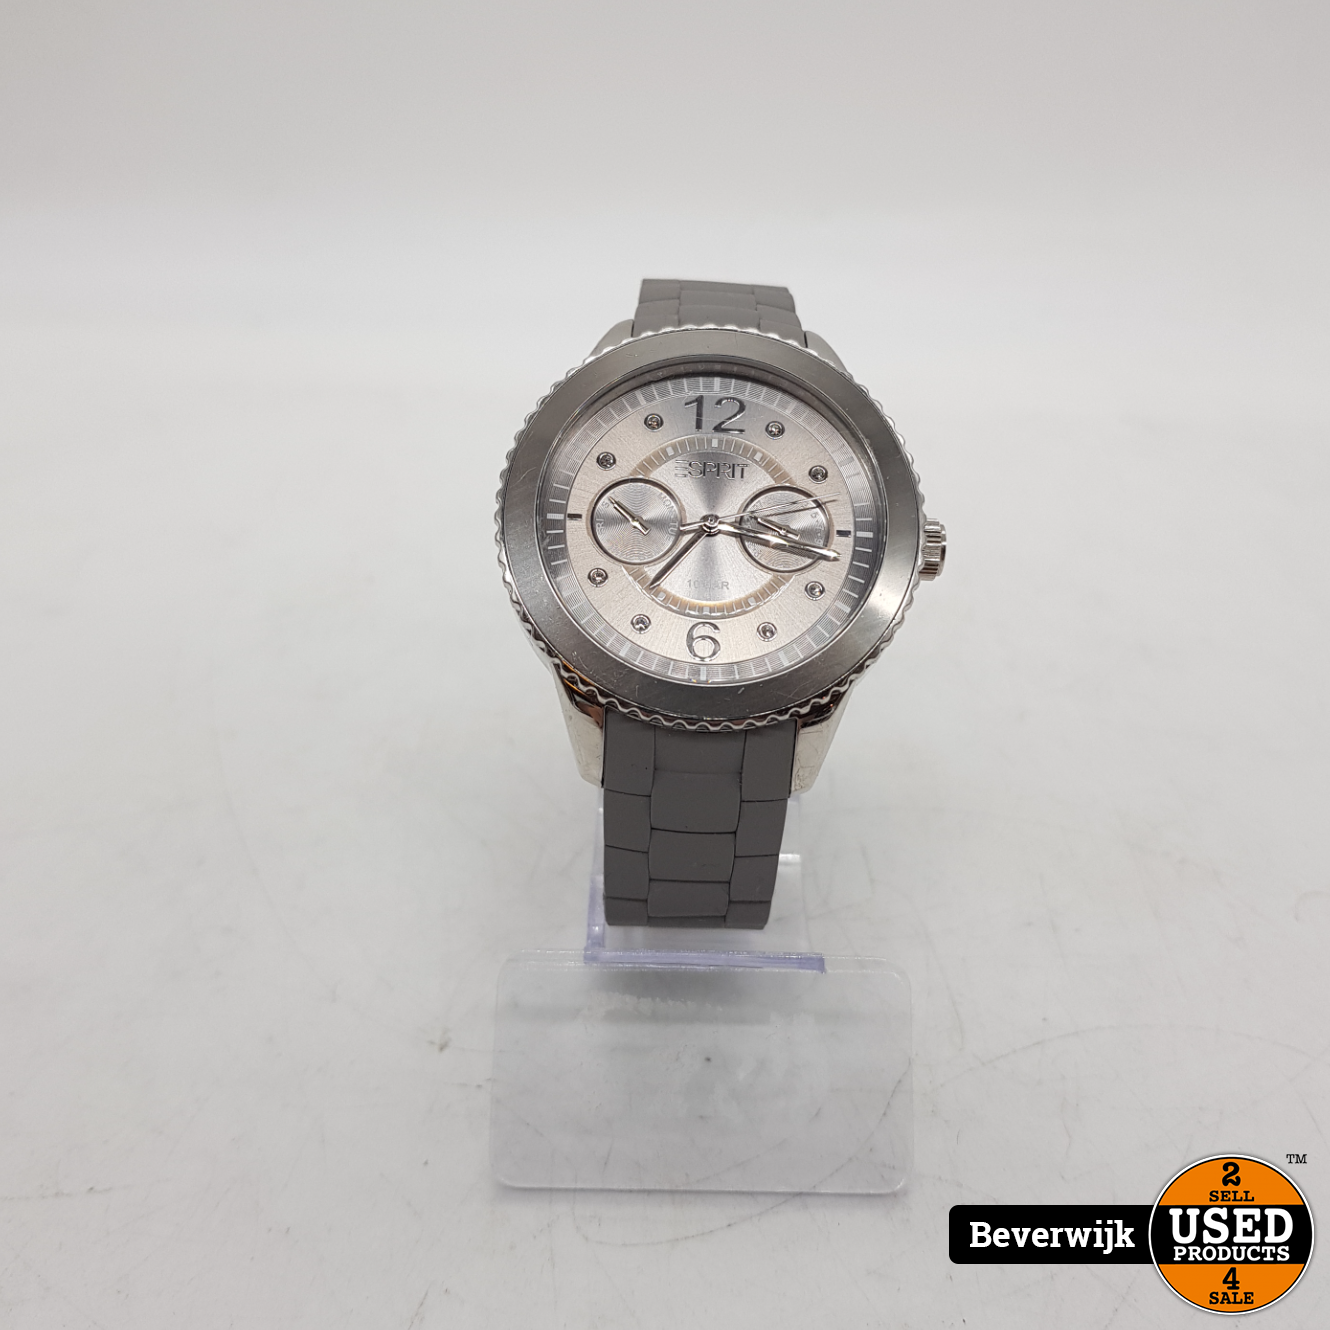 ESPRIT 105332 Unisex Horloge - Staat Used Products Beverwijk